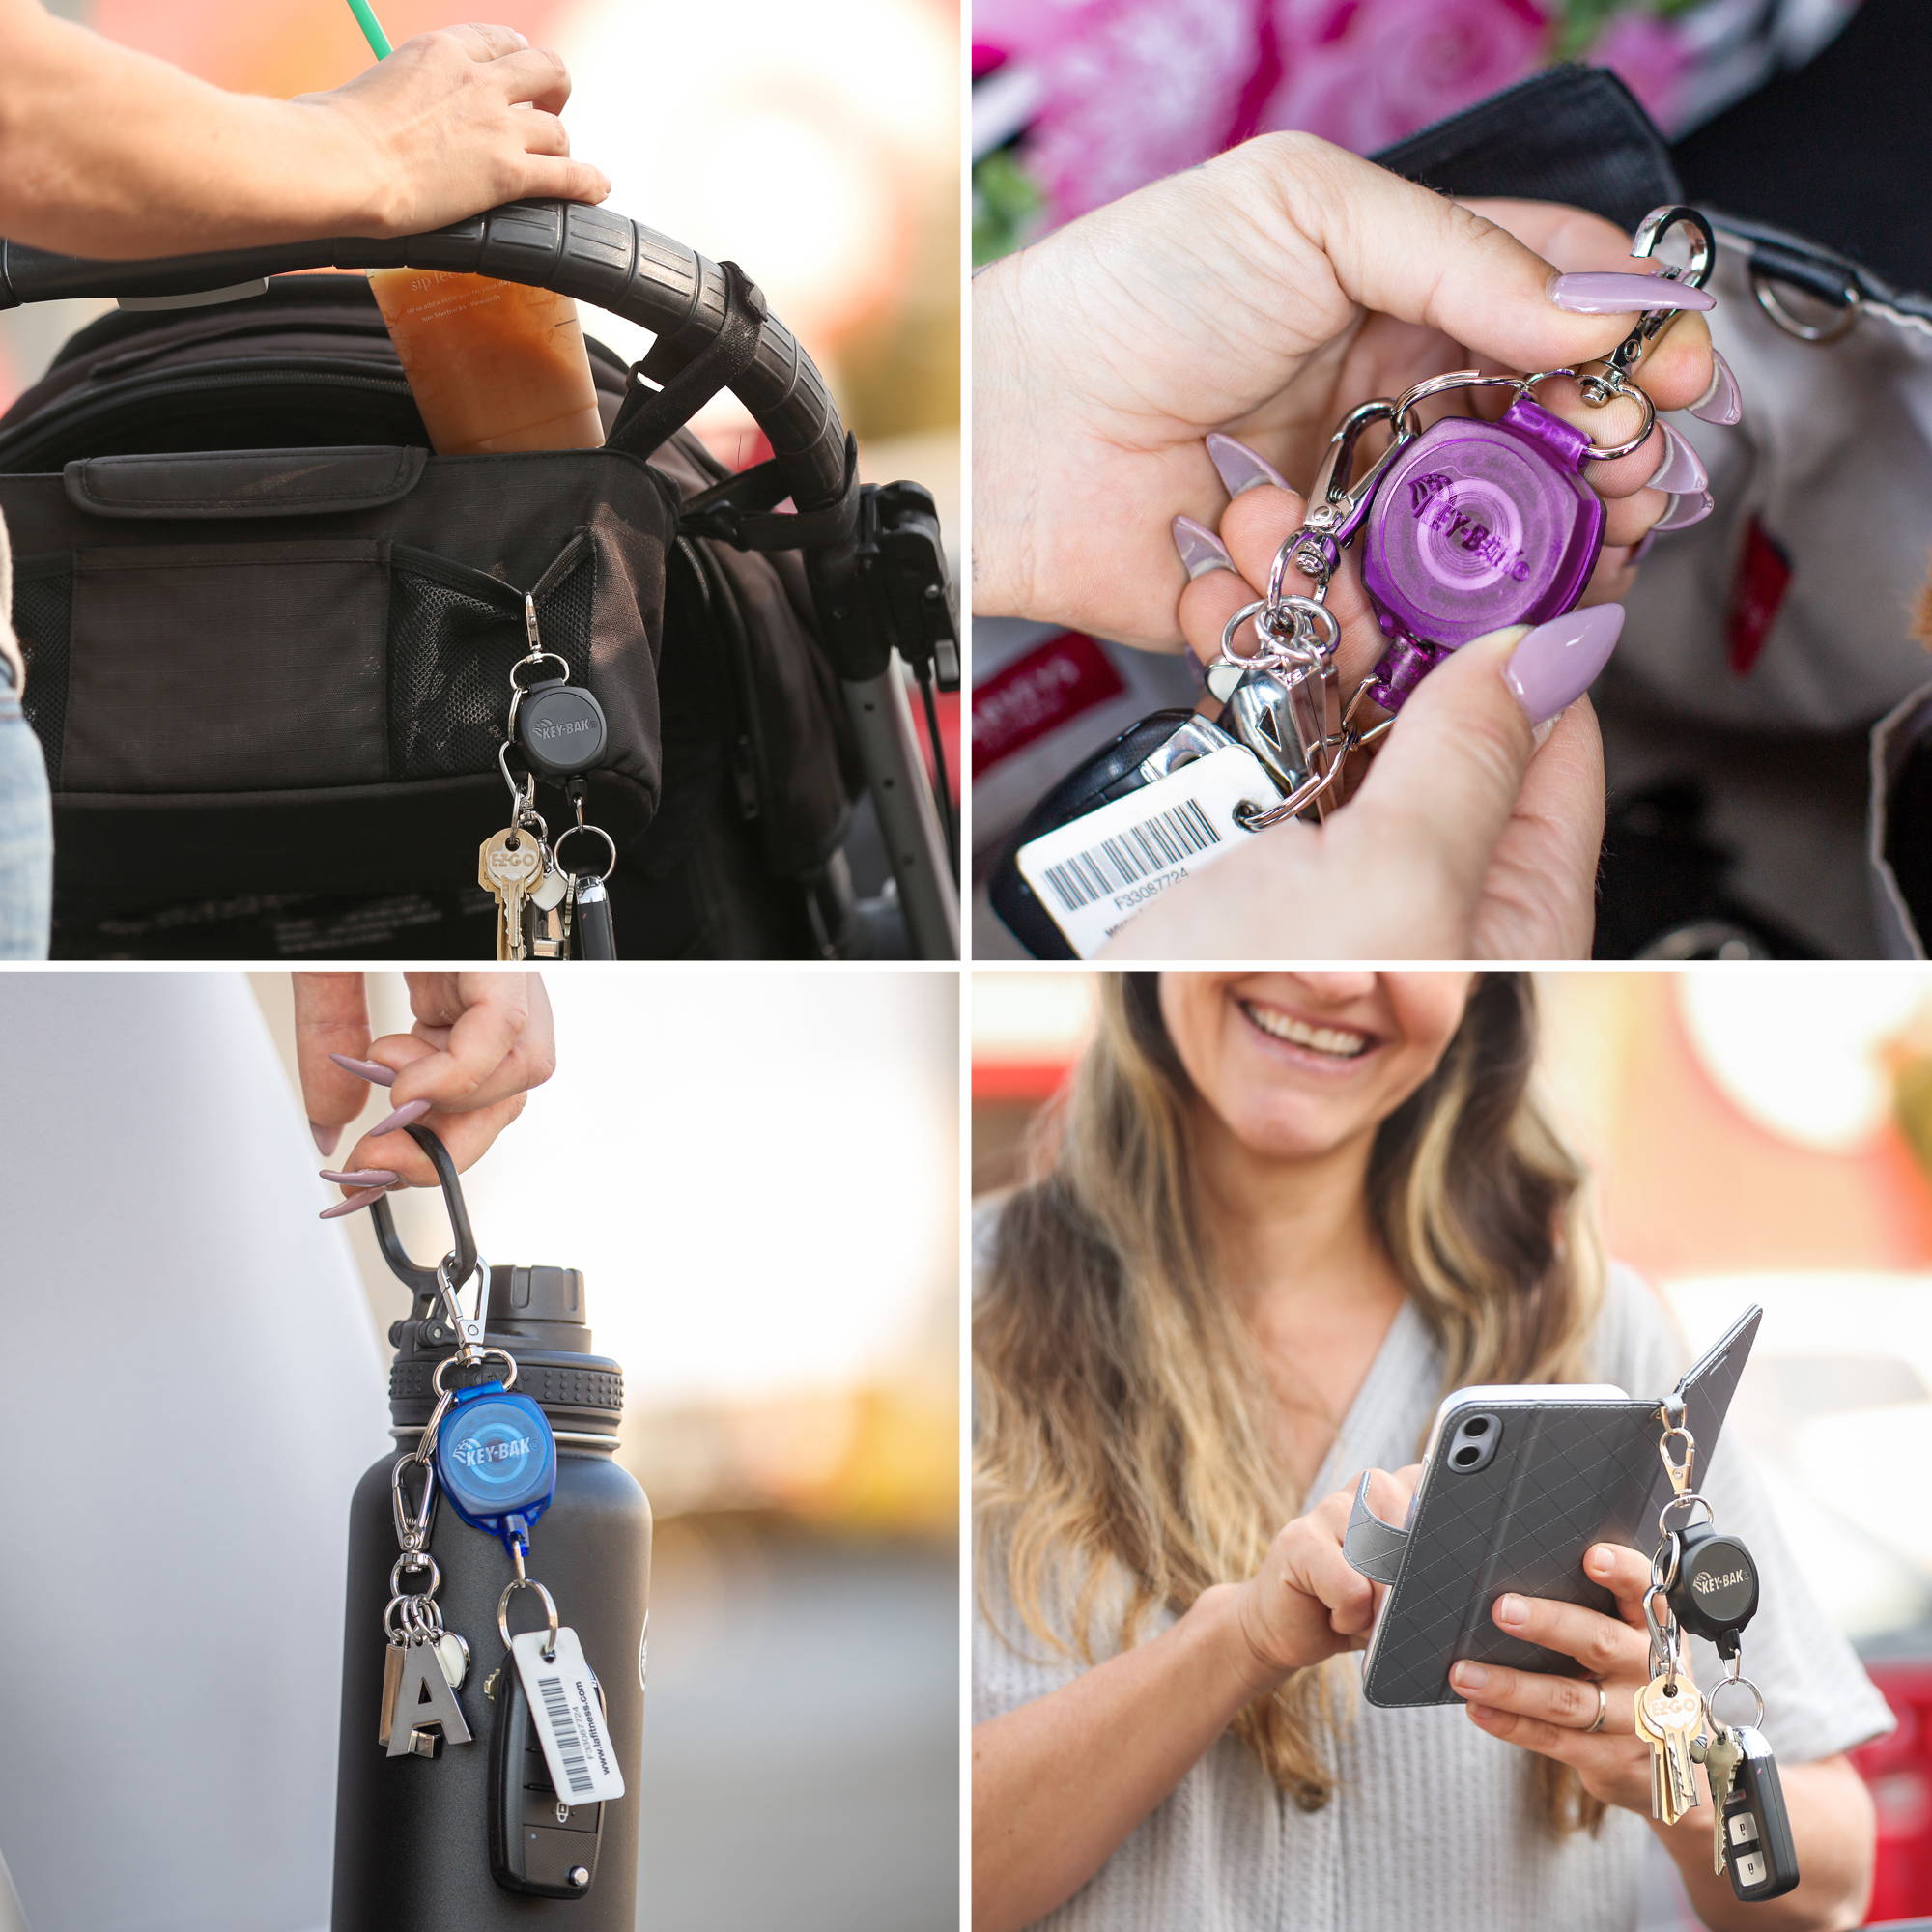 MID6-Duo Heavy Duty Badge Reel and Keychain Holds 10 Keys – KEY-BAK